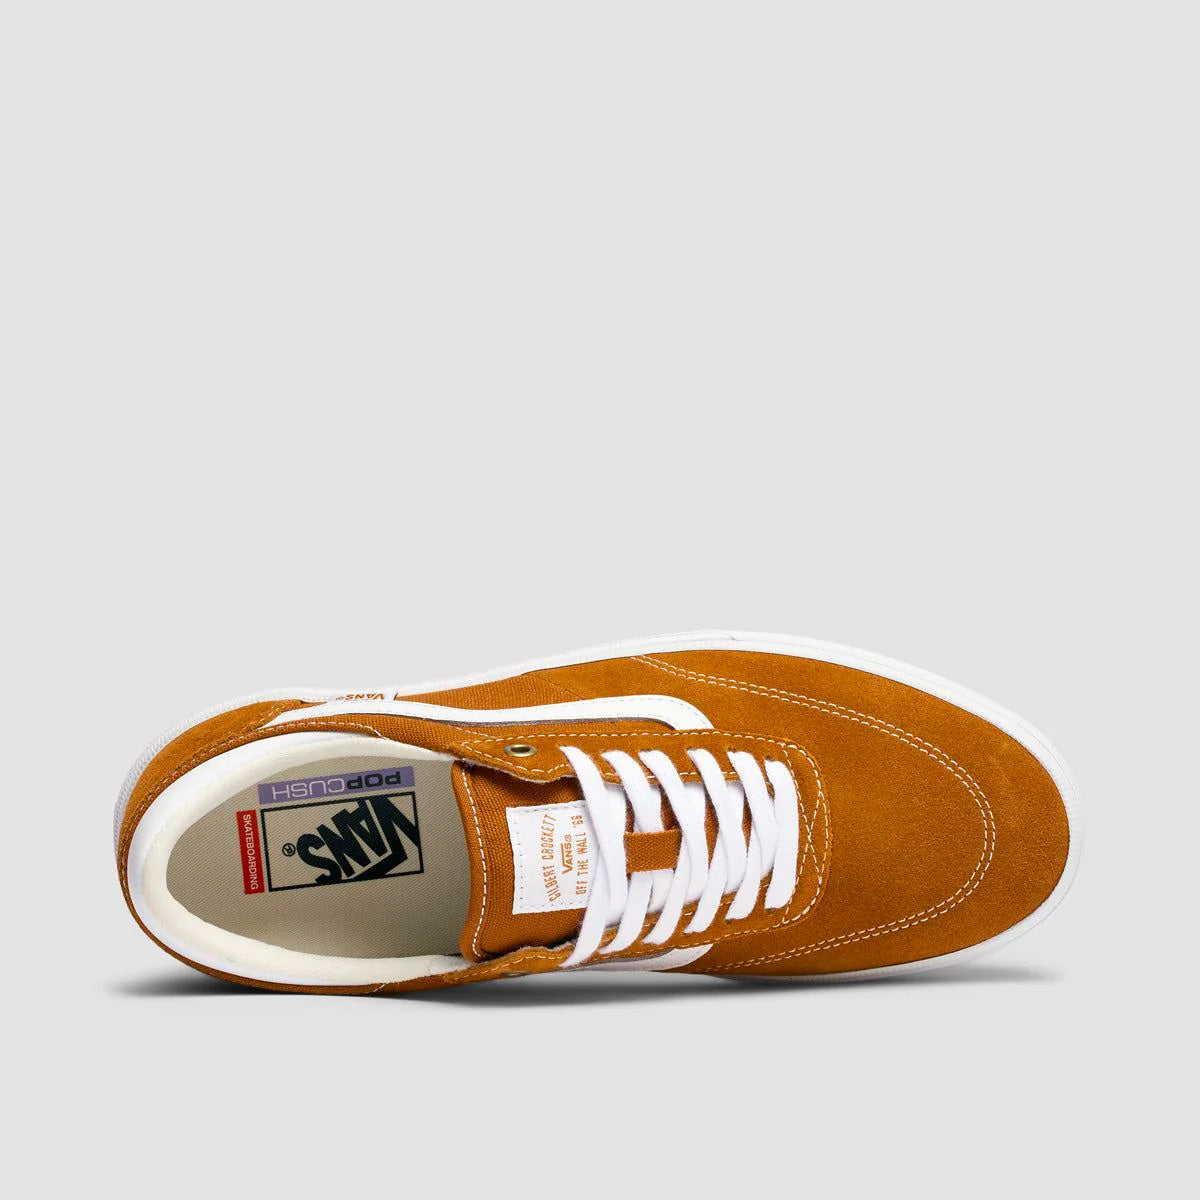 Vans Gilbert Crockett Shoes - Golden Brown - Kids